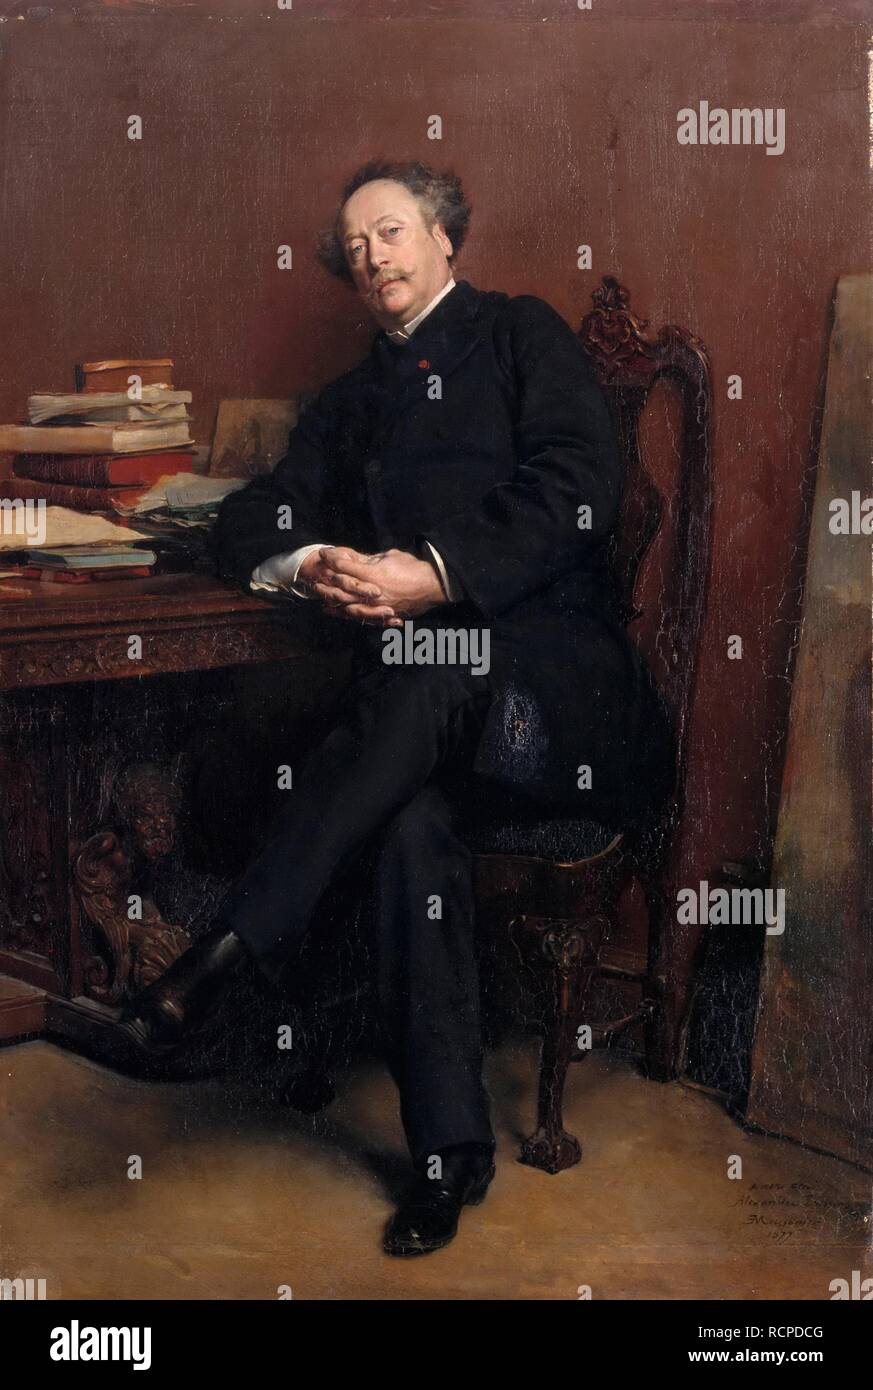 Alexandre Dumas, fils (1824-1895). Museum: Musée de l'Histoire de France, Château de Versailles. Author: MEISSONIER, JEAN-LOUIS-ERNEST. Stock Photo